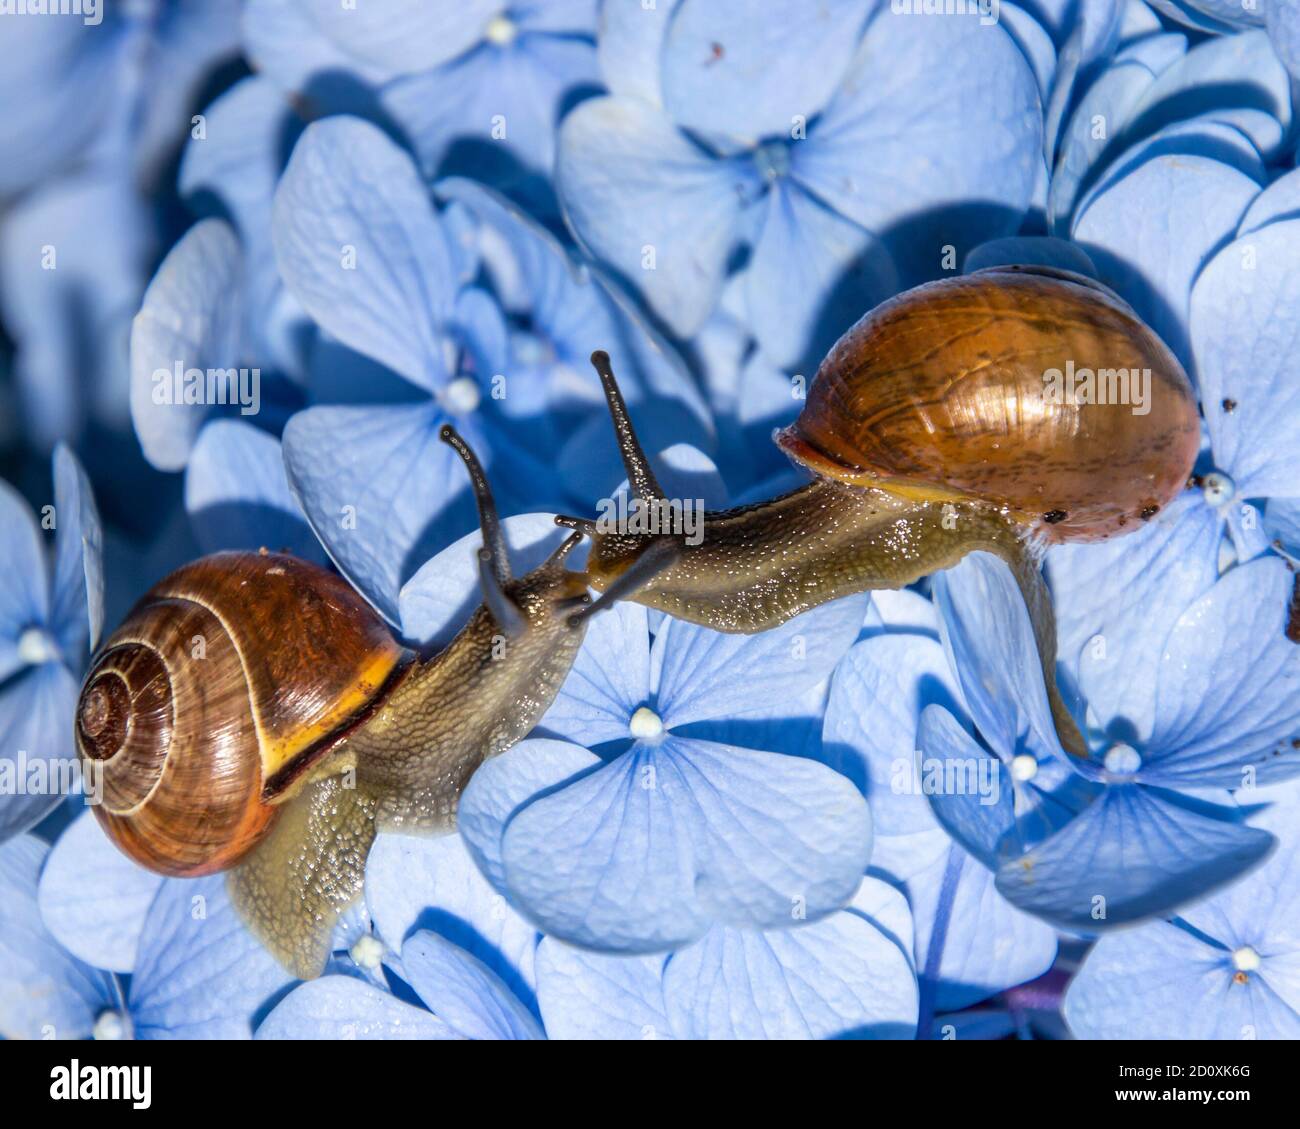 Belle lumache da vicino su un enorme fiore blu. Le due lumache brune interagiscono tra loro. I petali di fiori forniscono contrasto nella parte posteriore Foto Stock